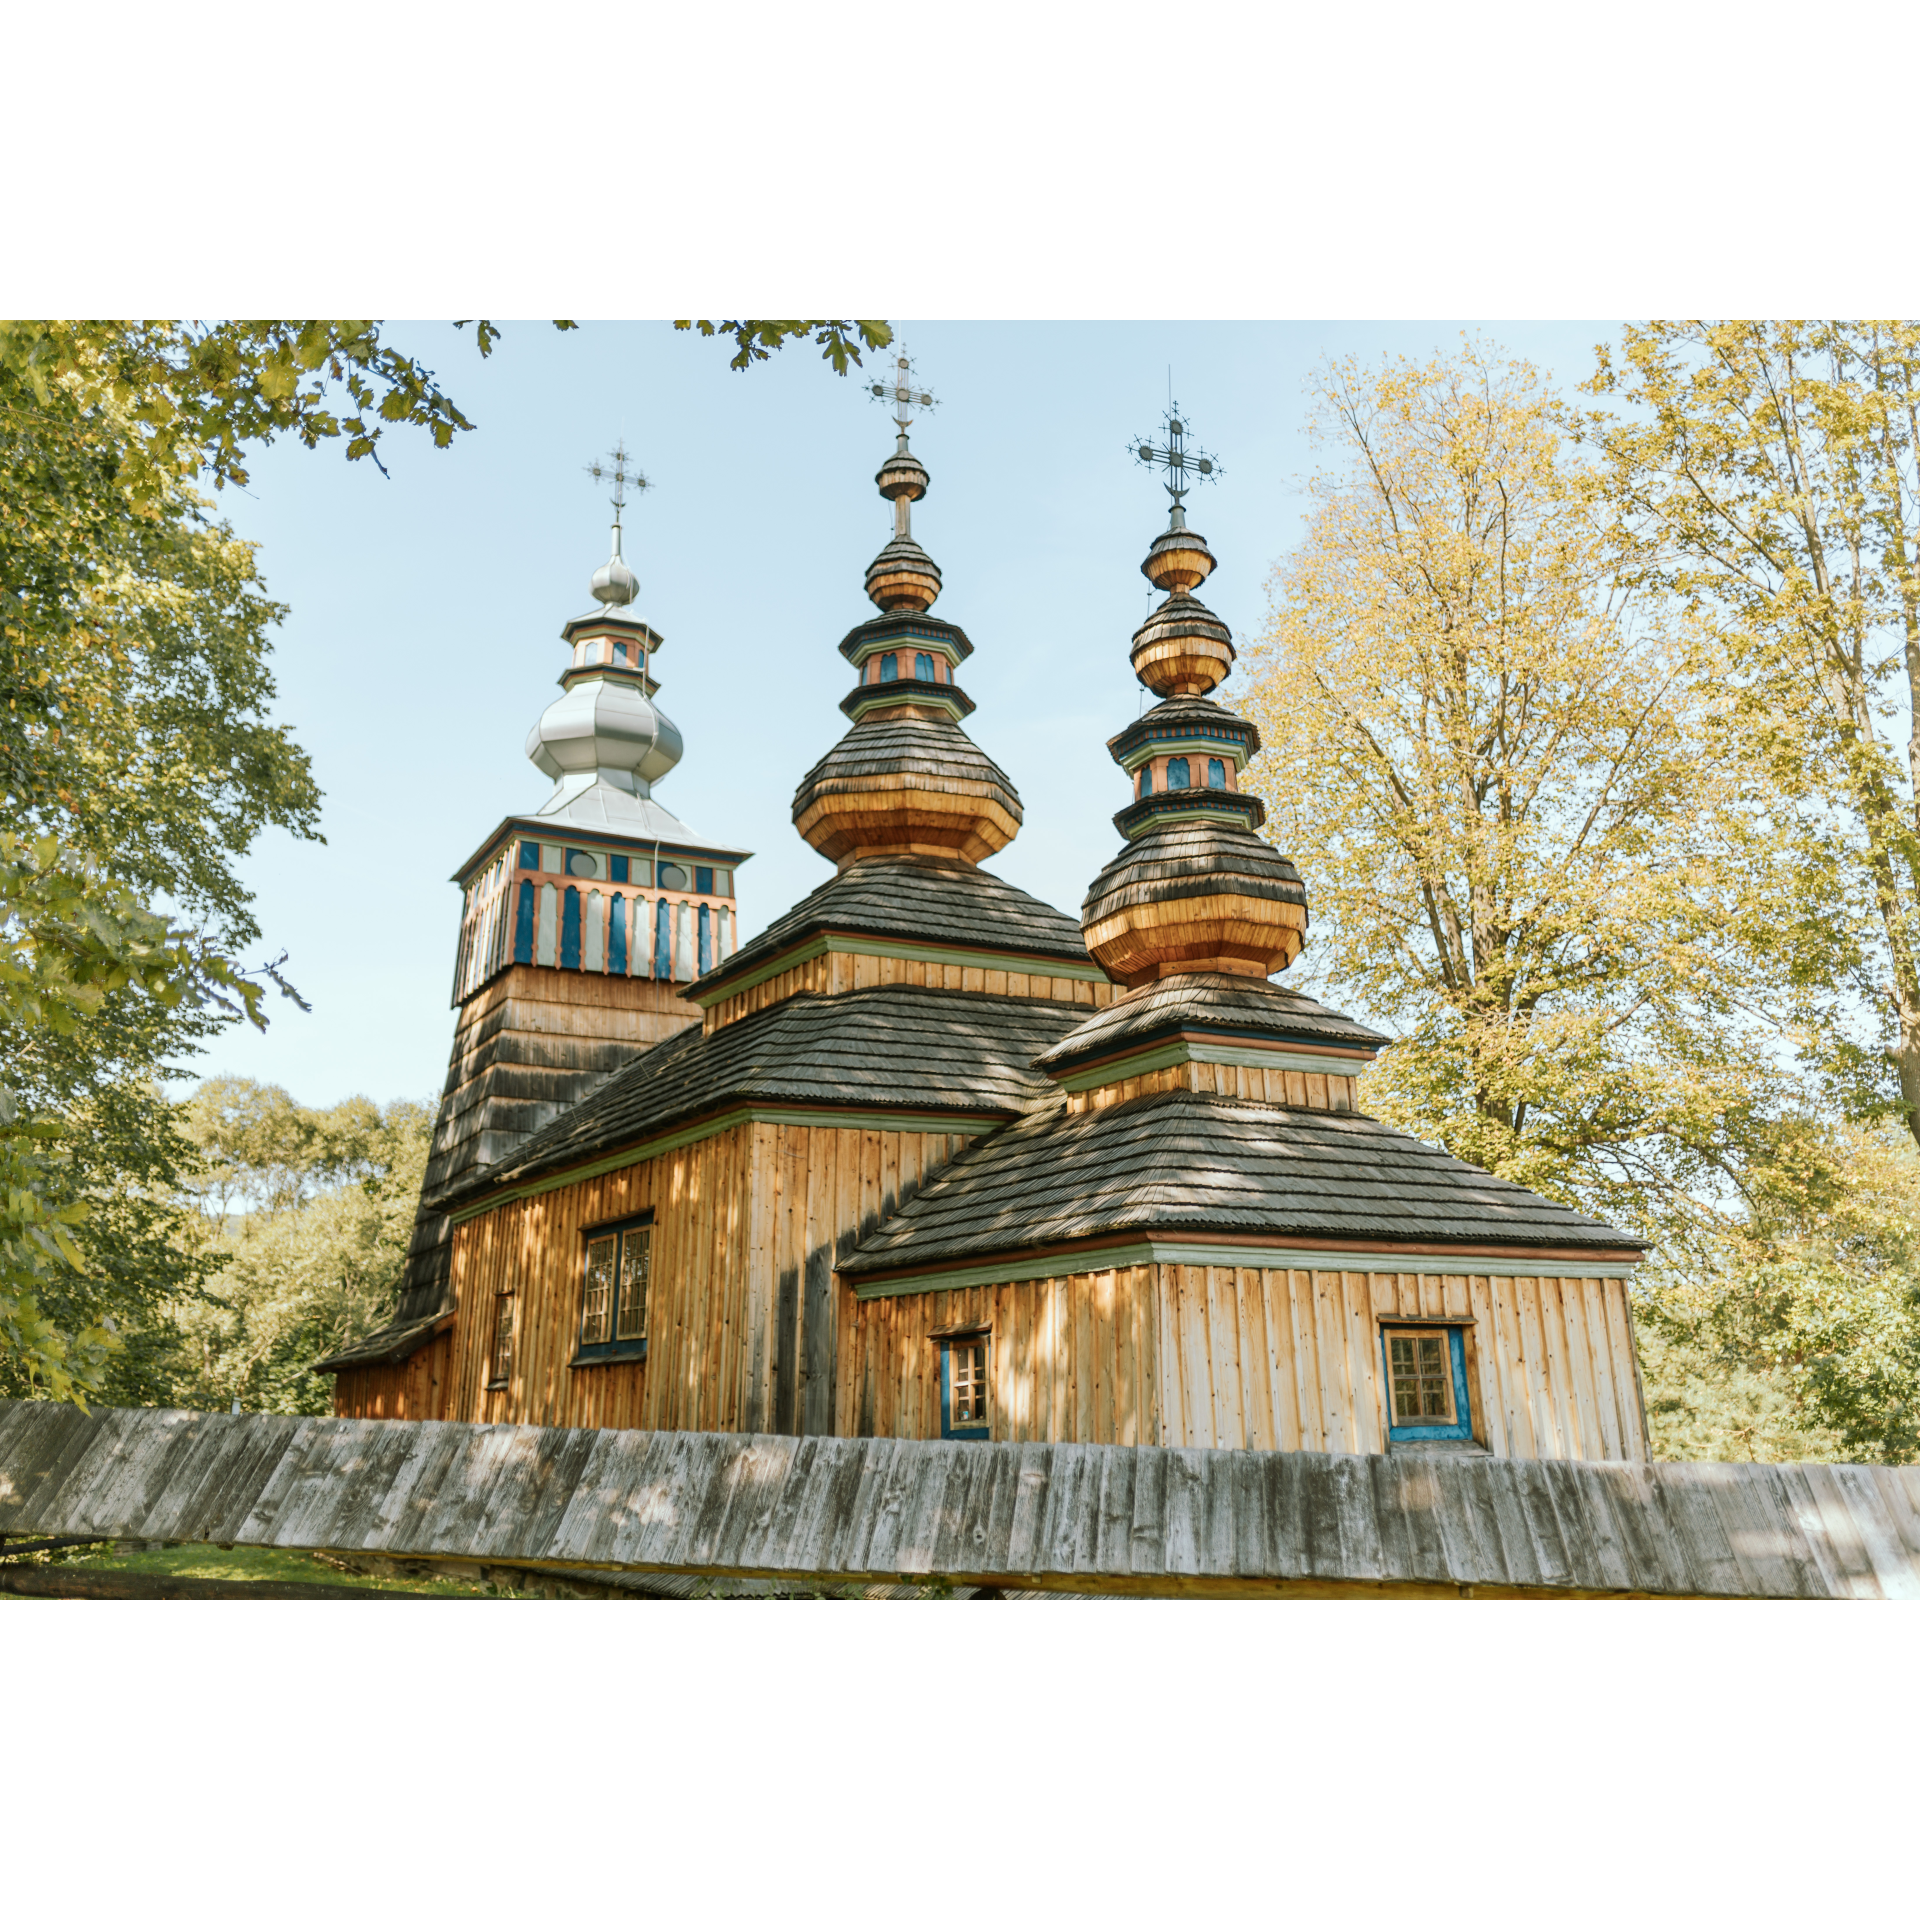 Cerkiew drewniana trójdzielna, ze zwieńczeniem każdej części w postaci kopuły, dachami czterospadowymi i wieżą o konstrukcji słupowej